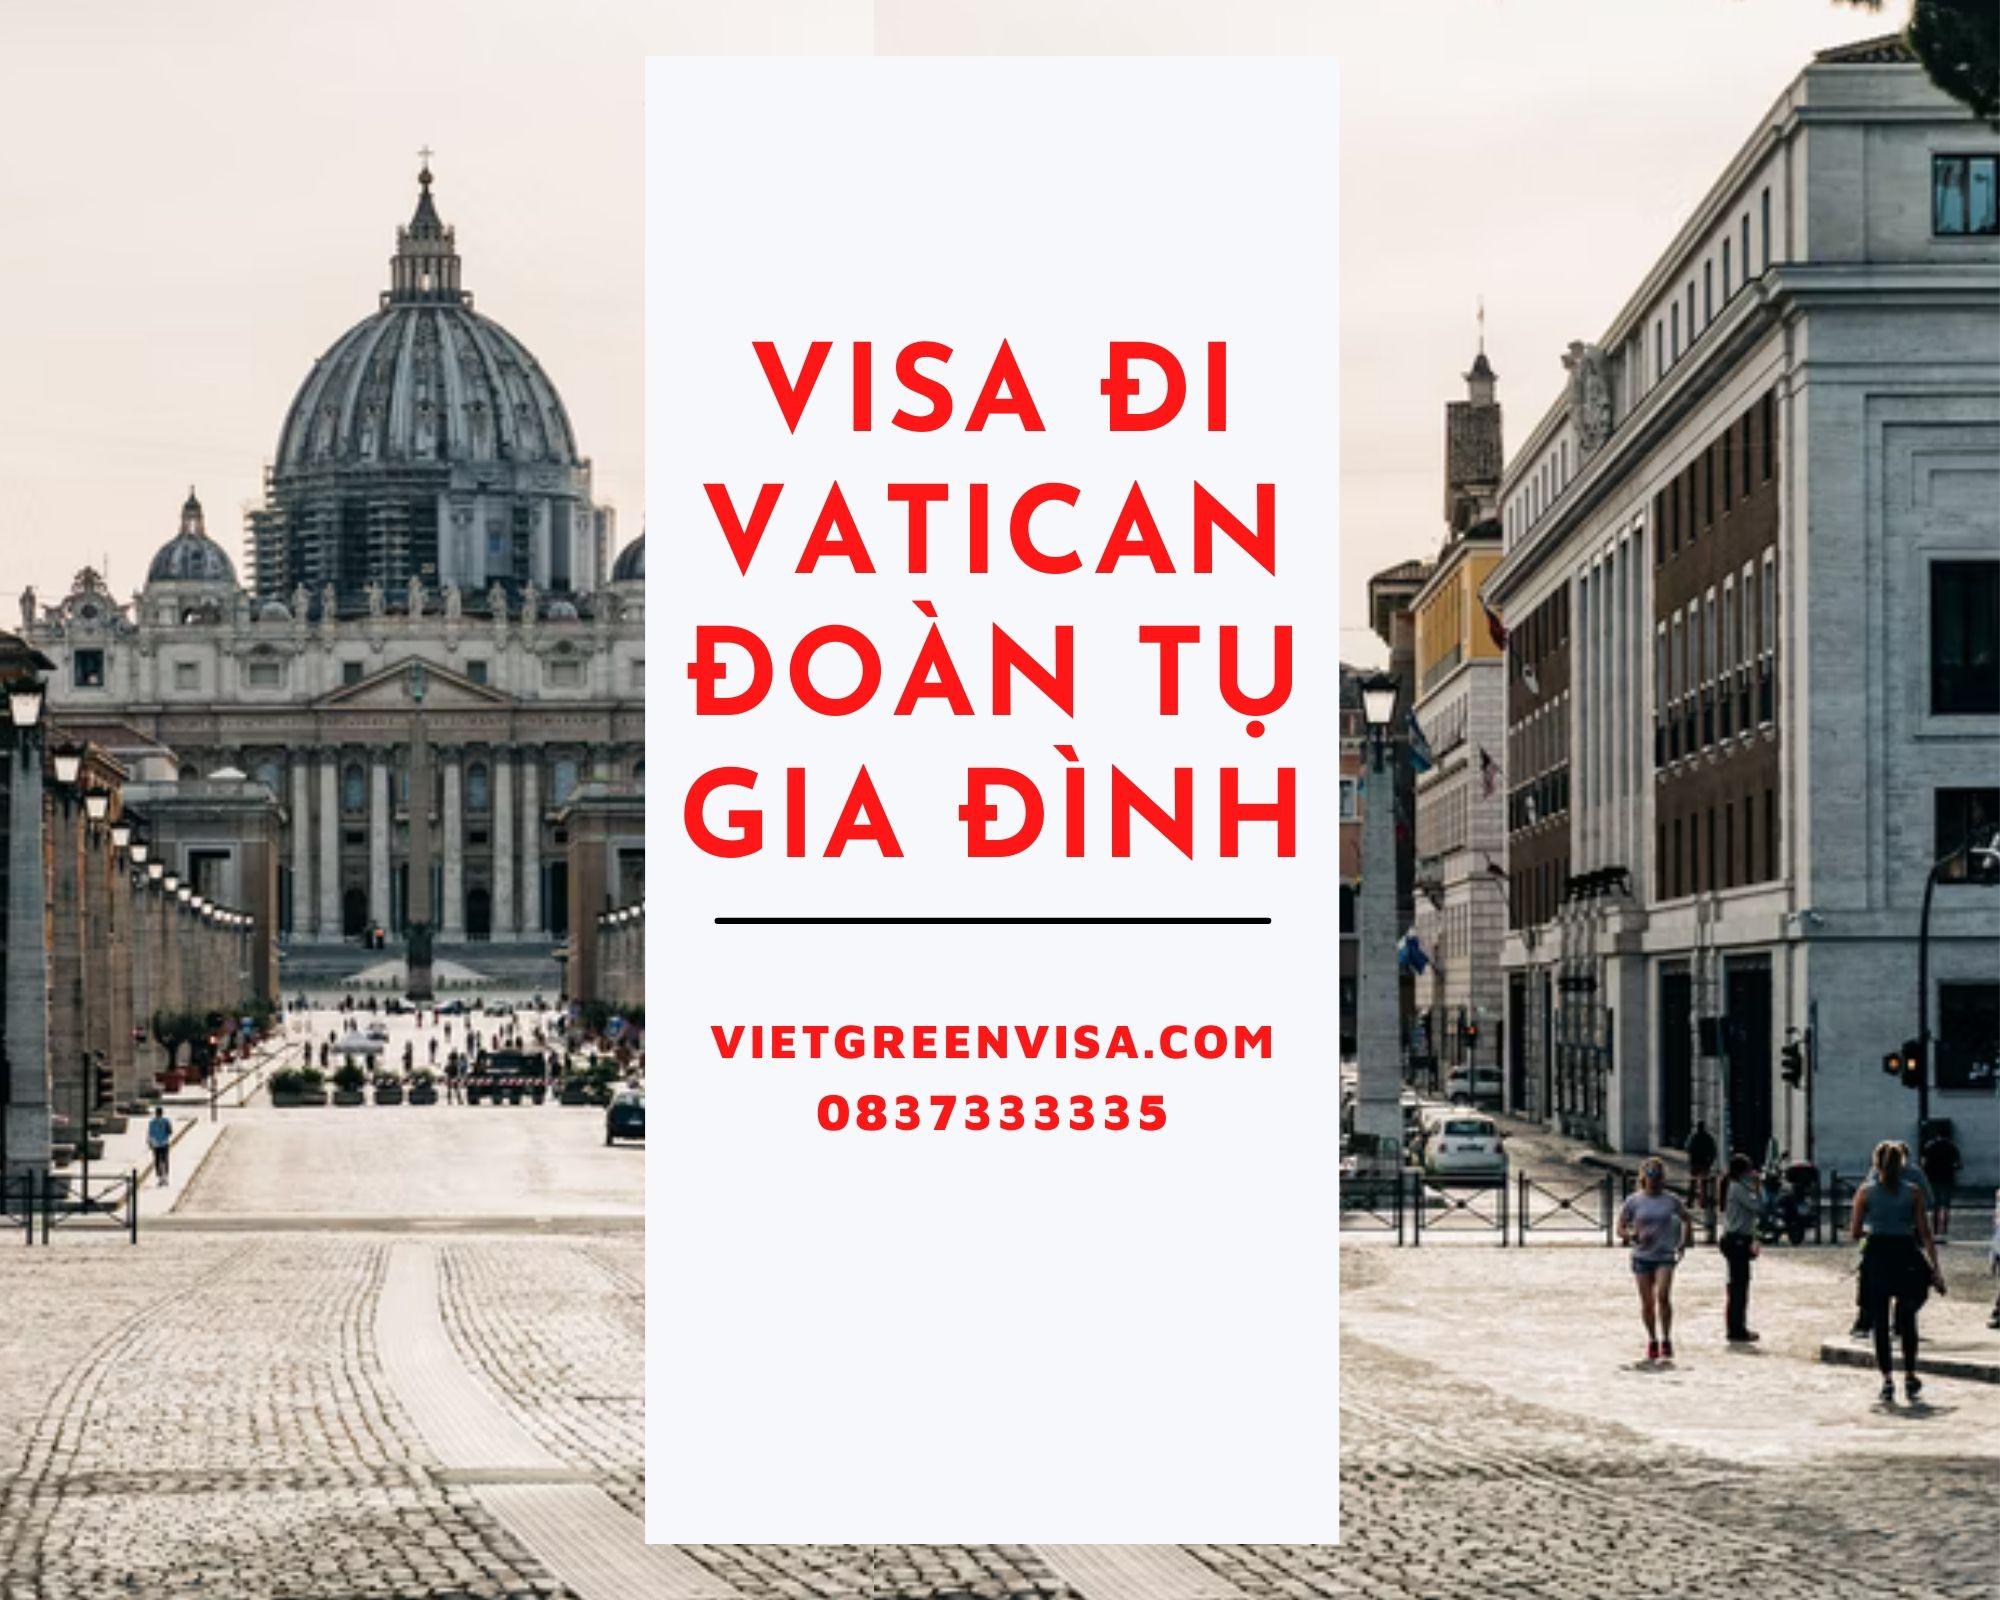 Tư vấn xin visa sang Vatican đoàn tụ gia đình, bạn bè 